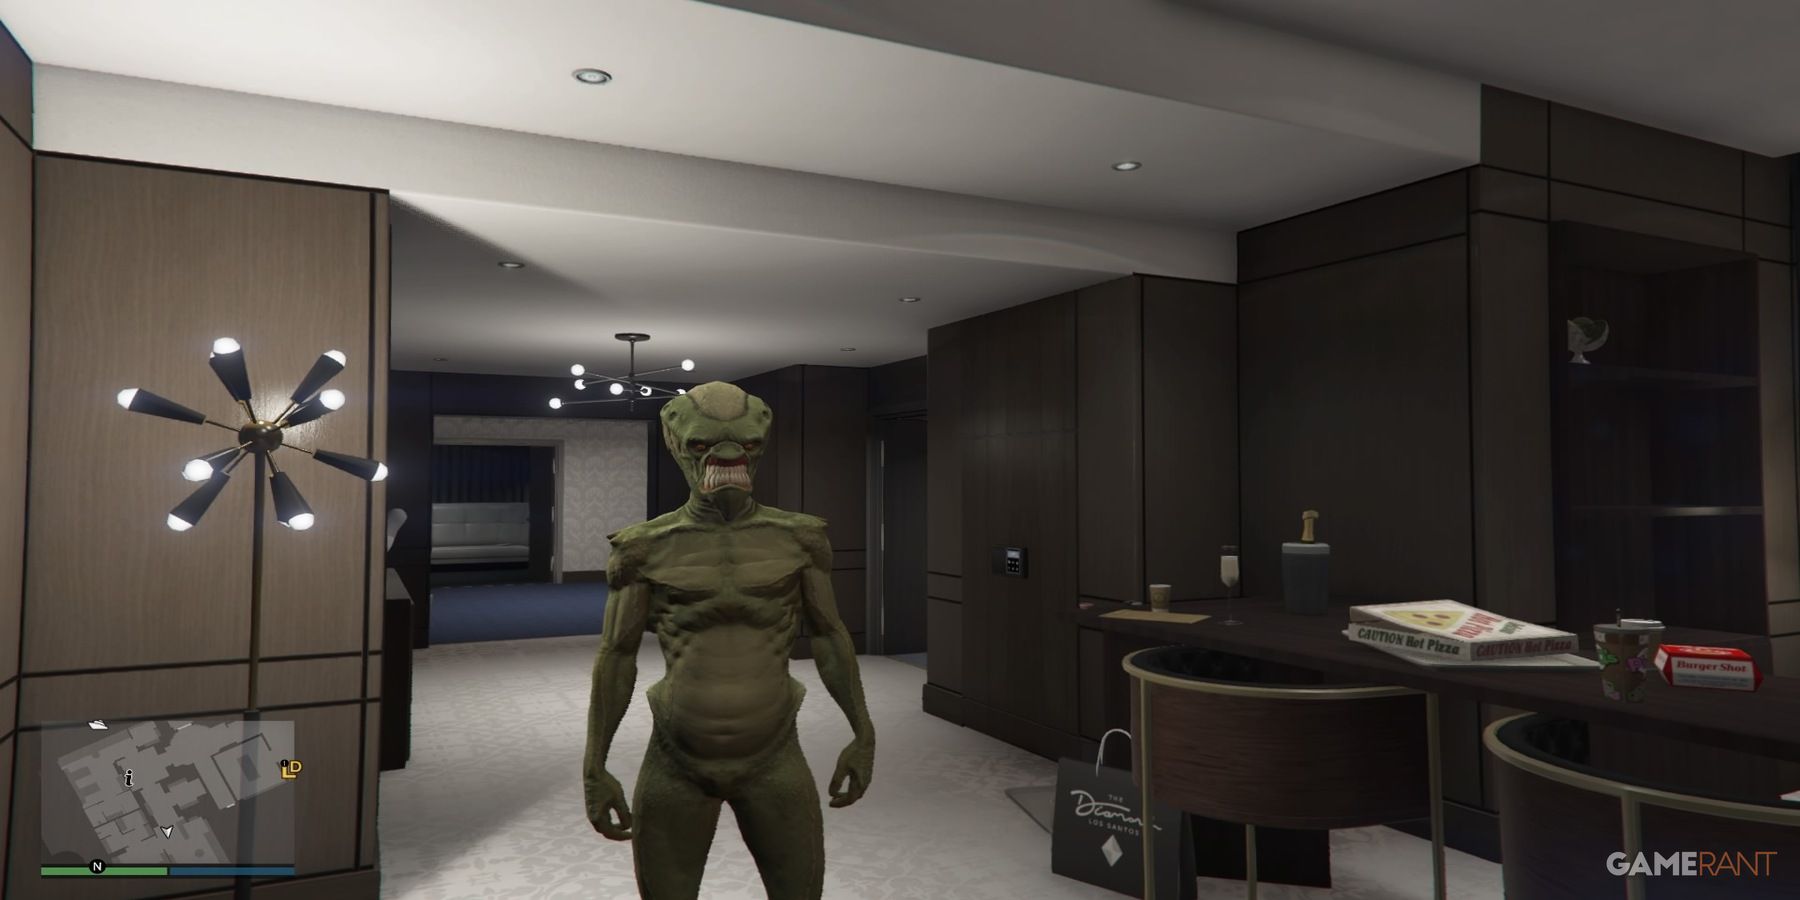 Alien Outfit in GTA 5 Online